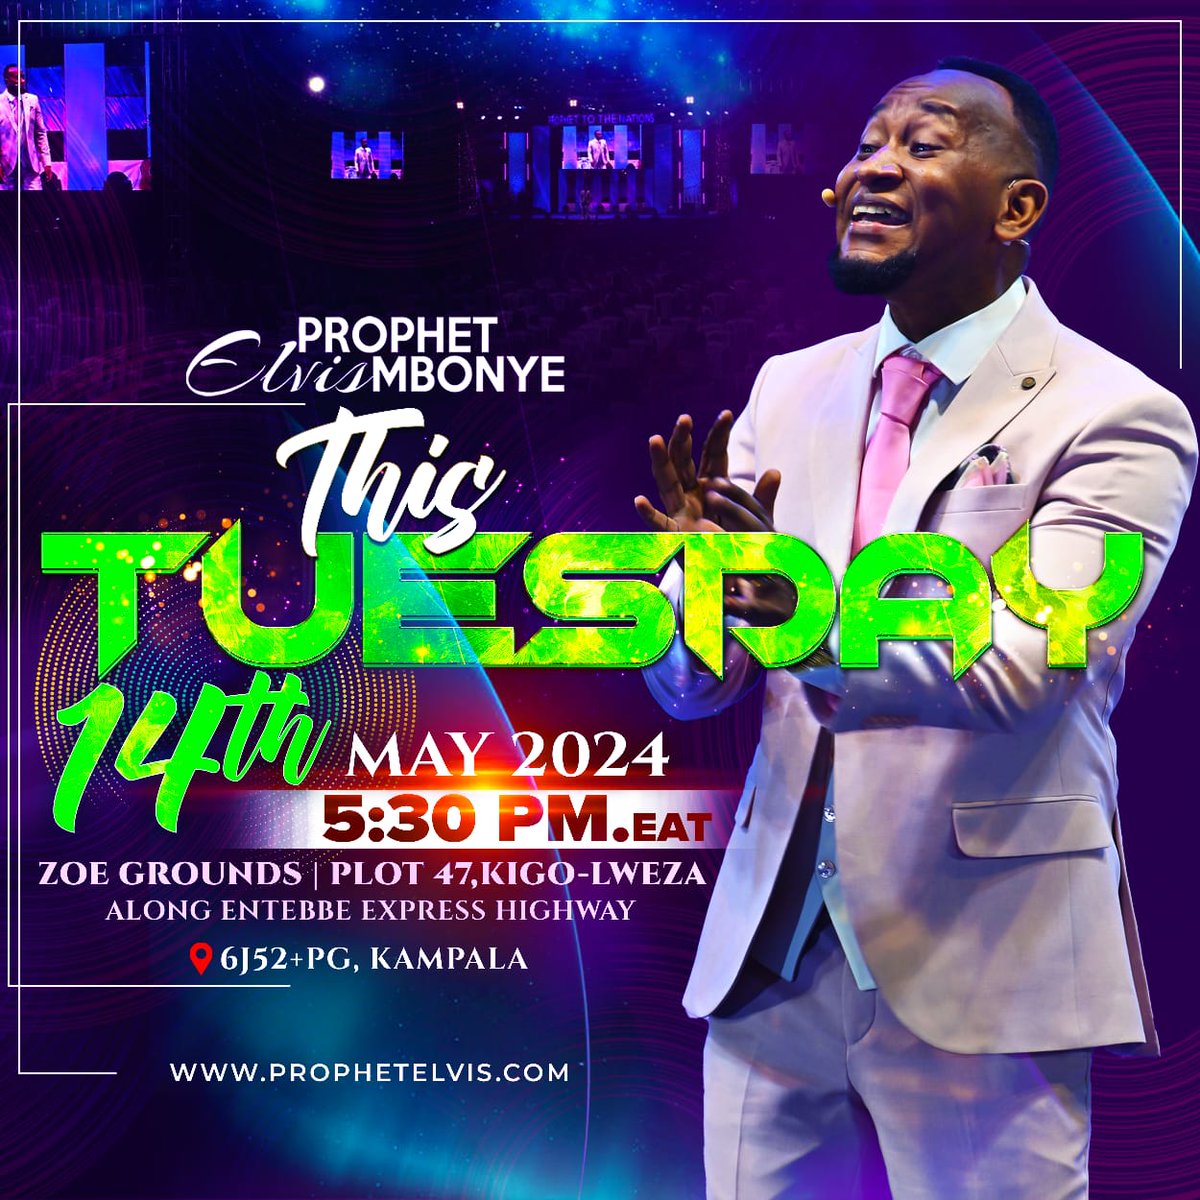 Prophet Elvis Mbonye this Tuesday May 14, 2024 5:30 pm at Plot 47 Kigo Lweza, Kampala Uganda. 📌bit.ly/zoegrounds #ProphetElvisMbonye